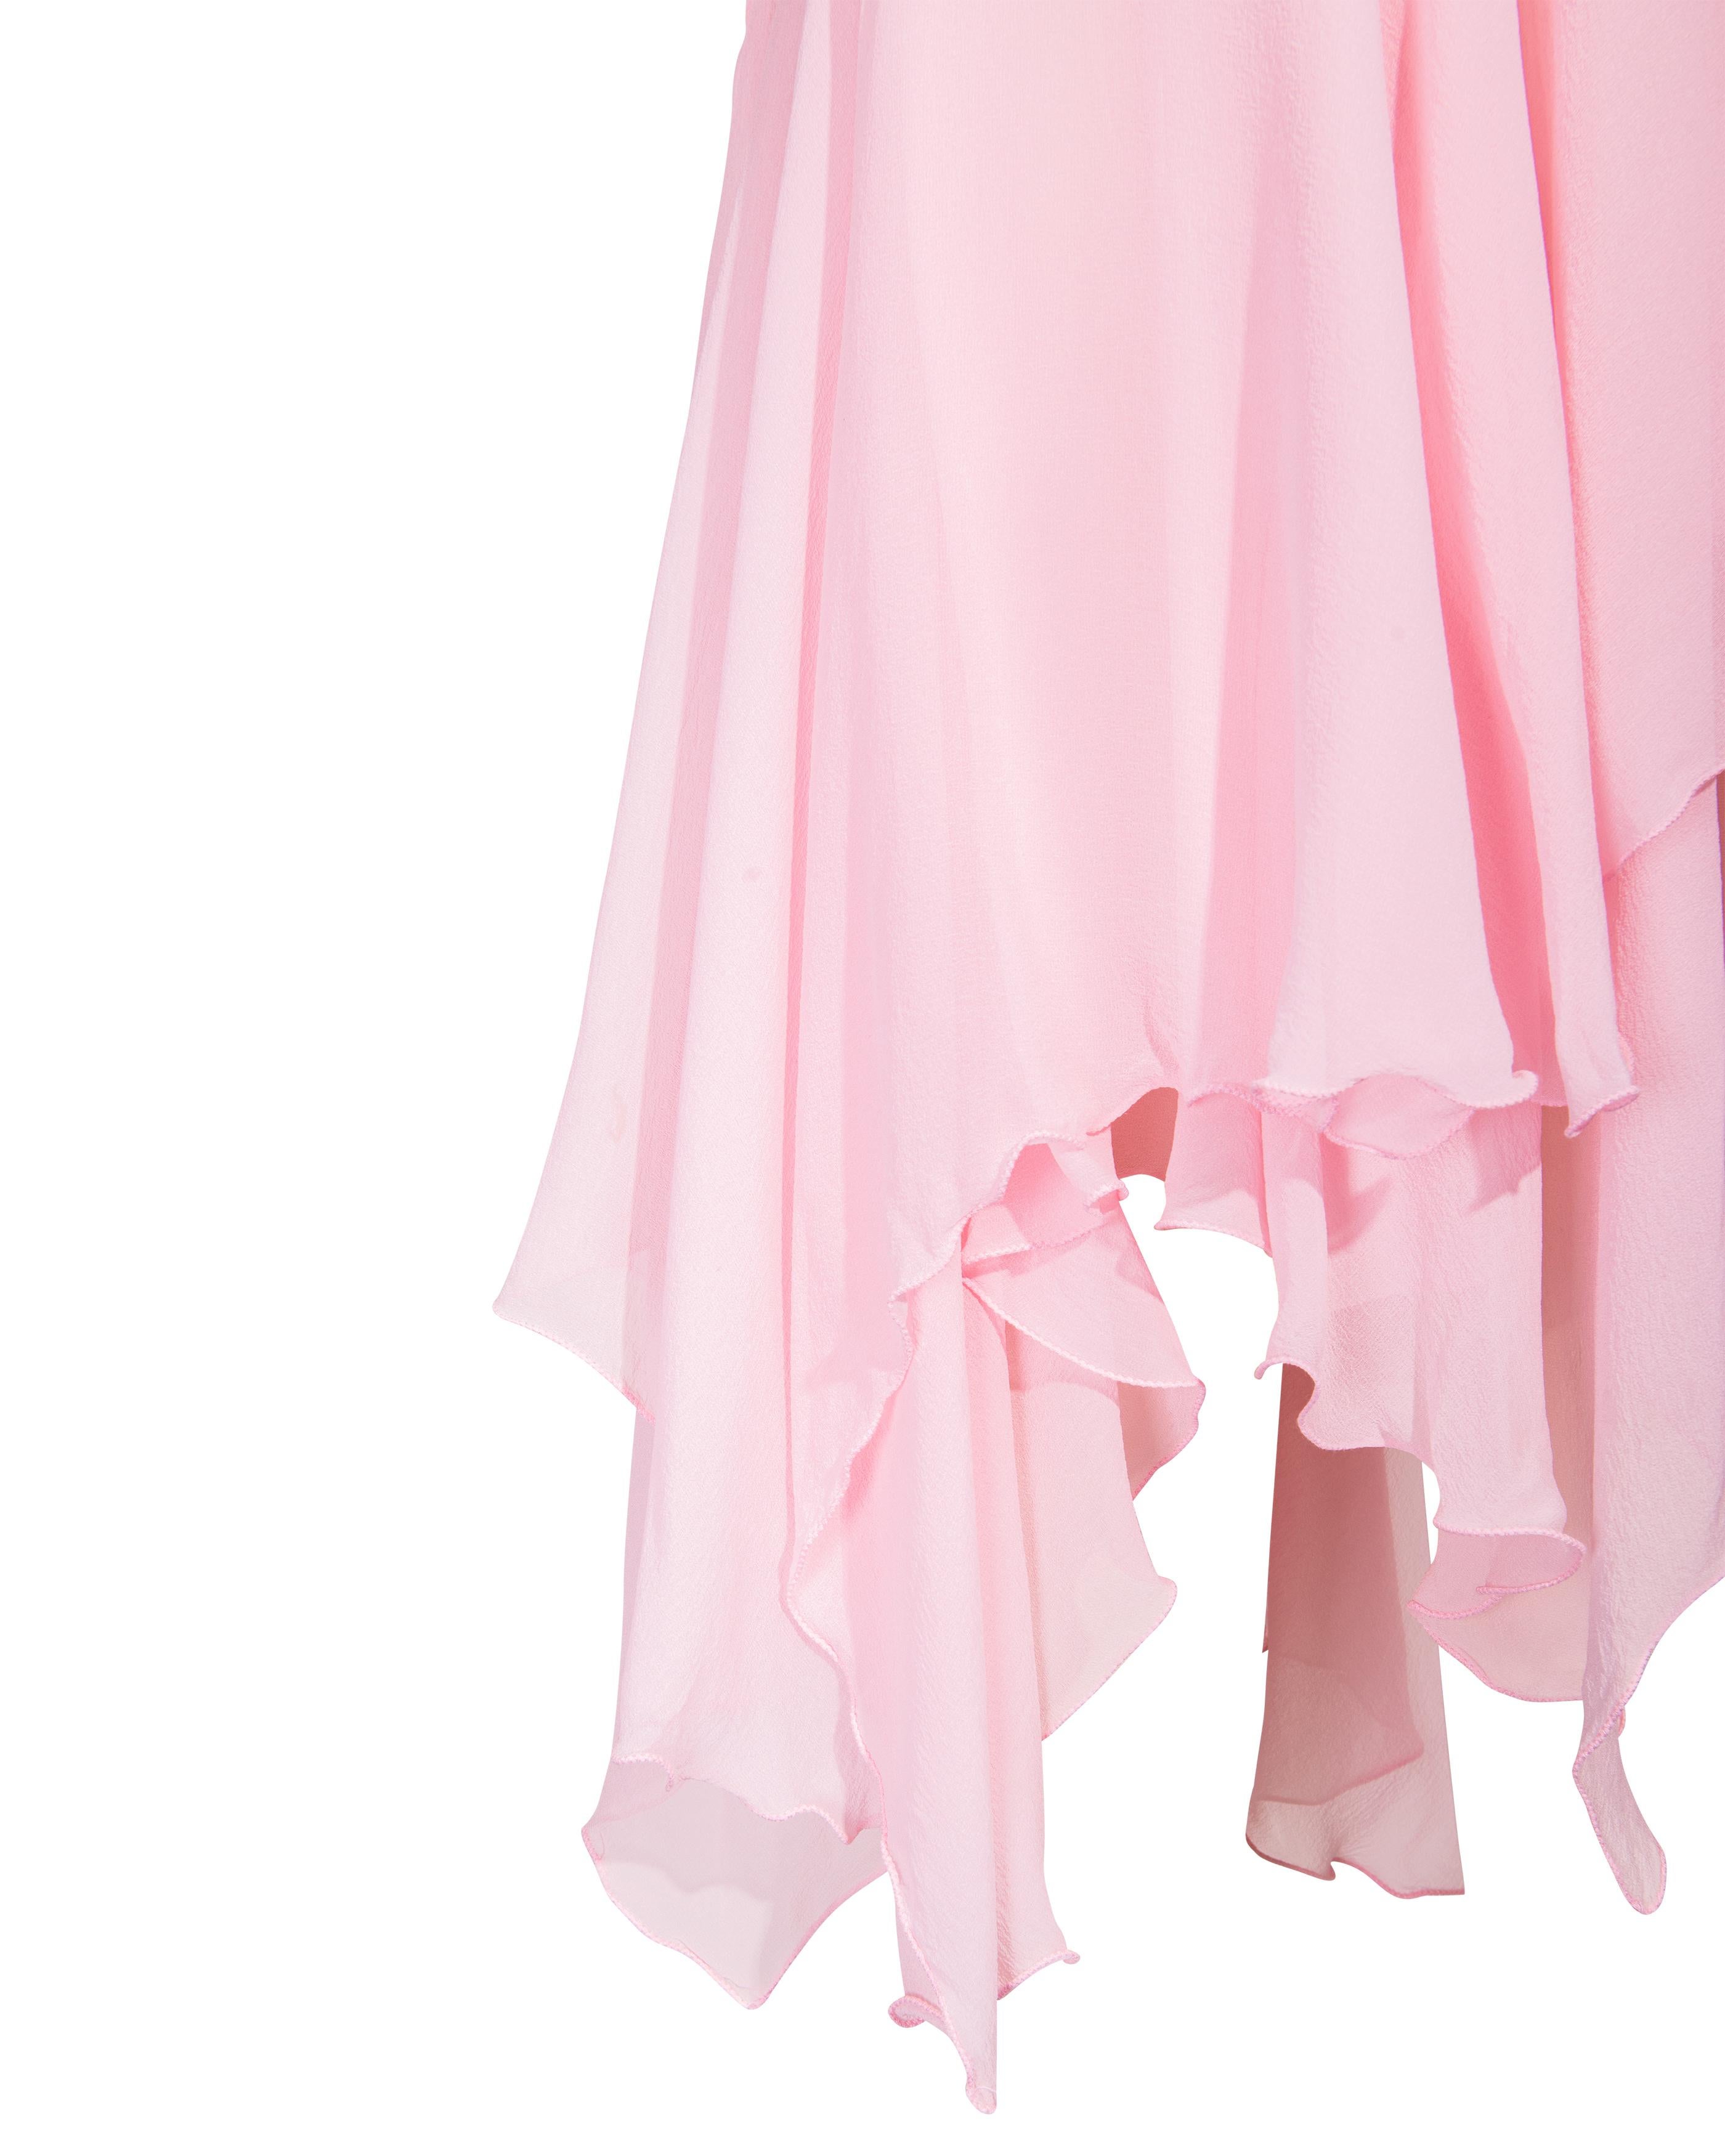 S/S 1995 Gianni Versace Pink Silk Chiffon Mini Dress 1